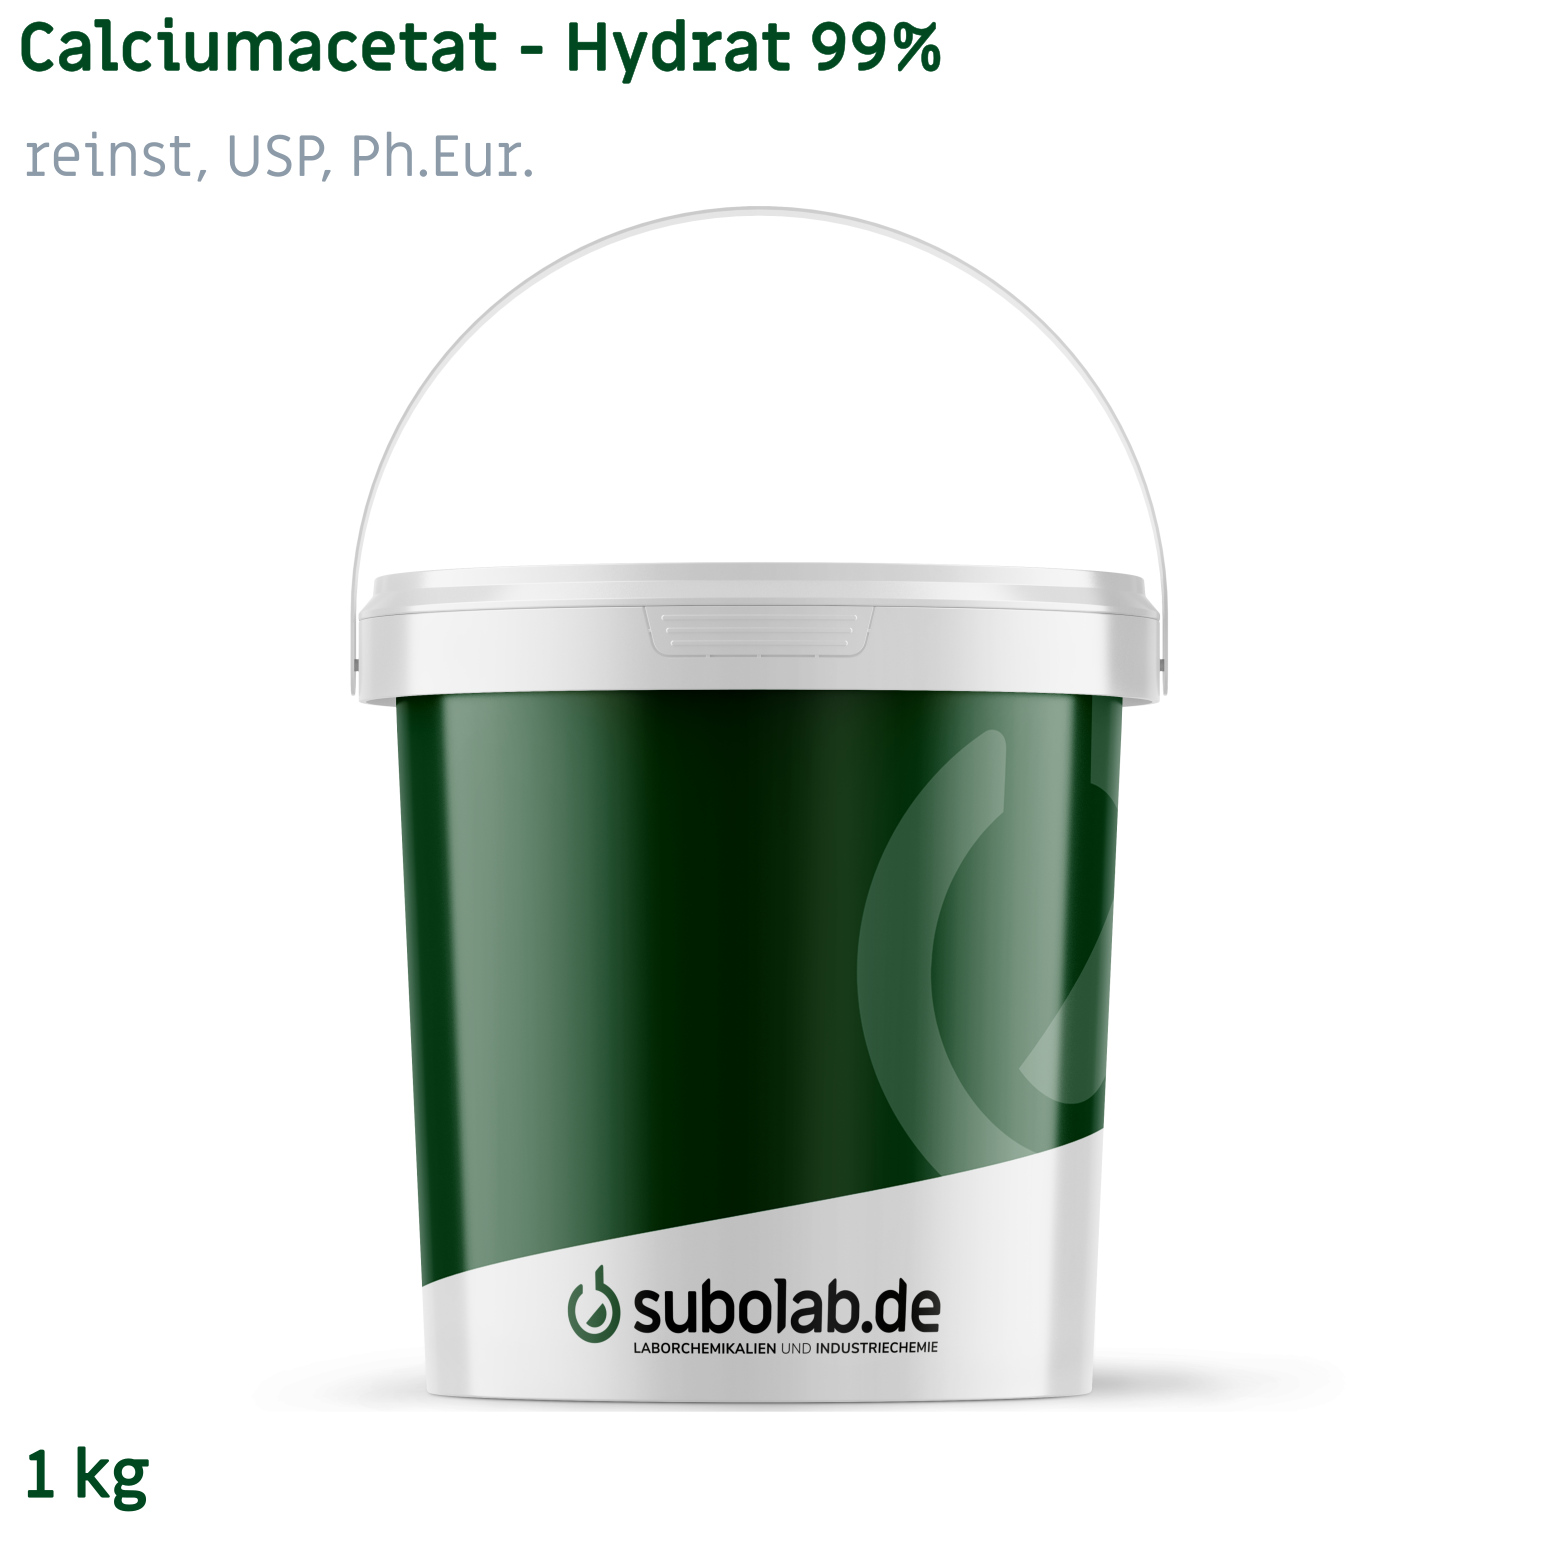 Bild von Calciumacetat - Hydrat 99% reinst, USP, Ph.Eur. (1 kg)